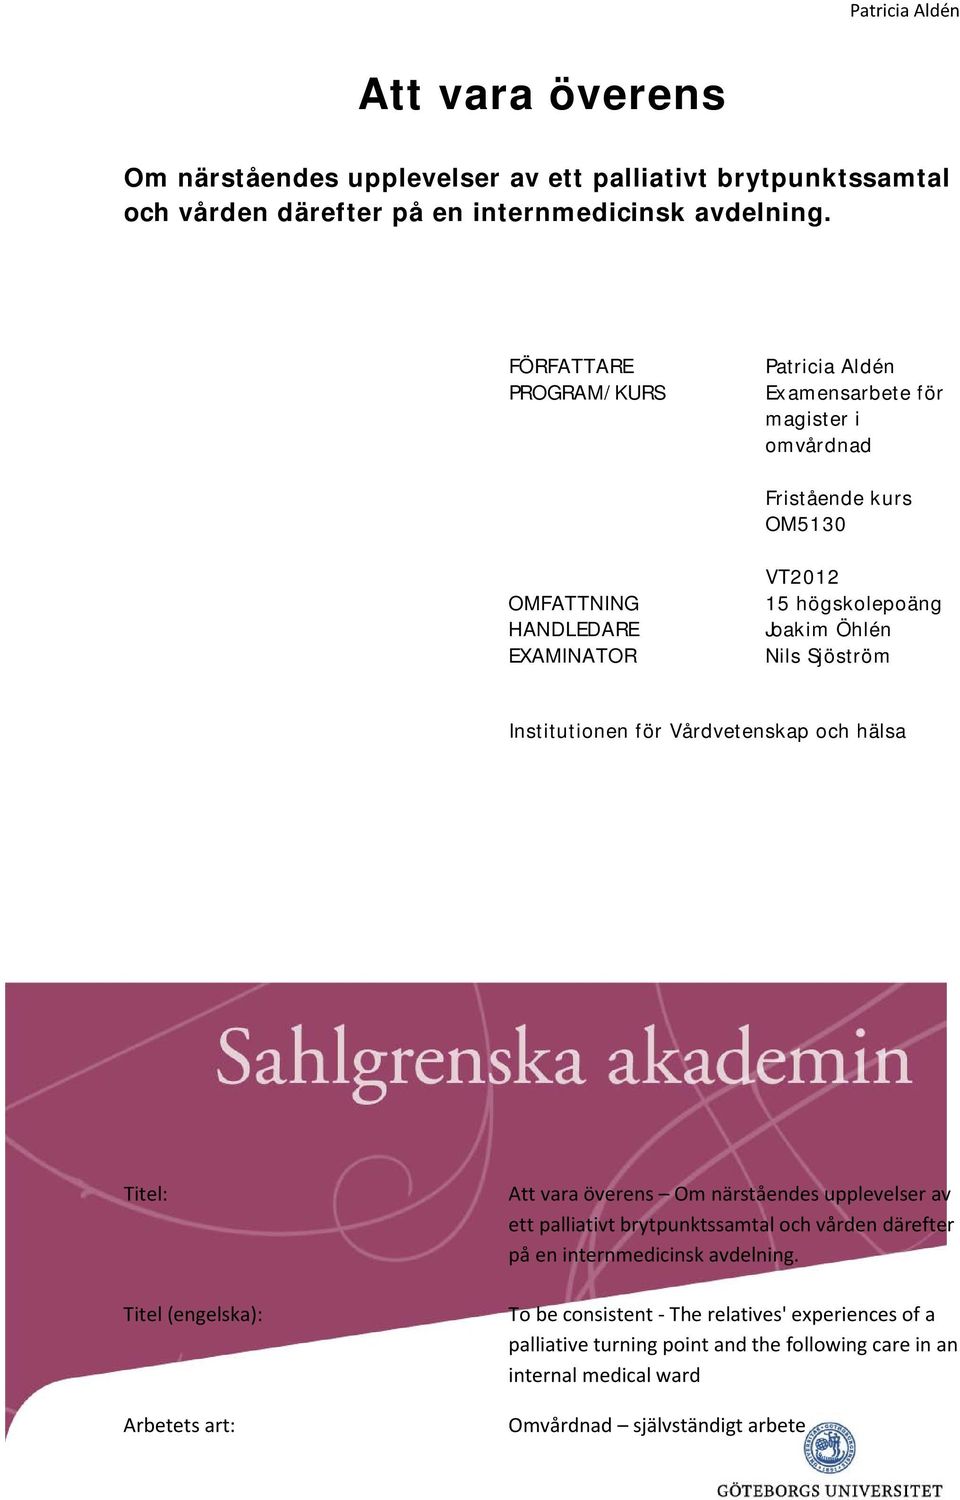 Nils Sjöström Institutionen för Vårdvetenskap och hälsa Titel: Titel (engelska): Arbetets art:  To be consistent - The relatives' experiences of a palliative turning point